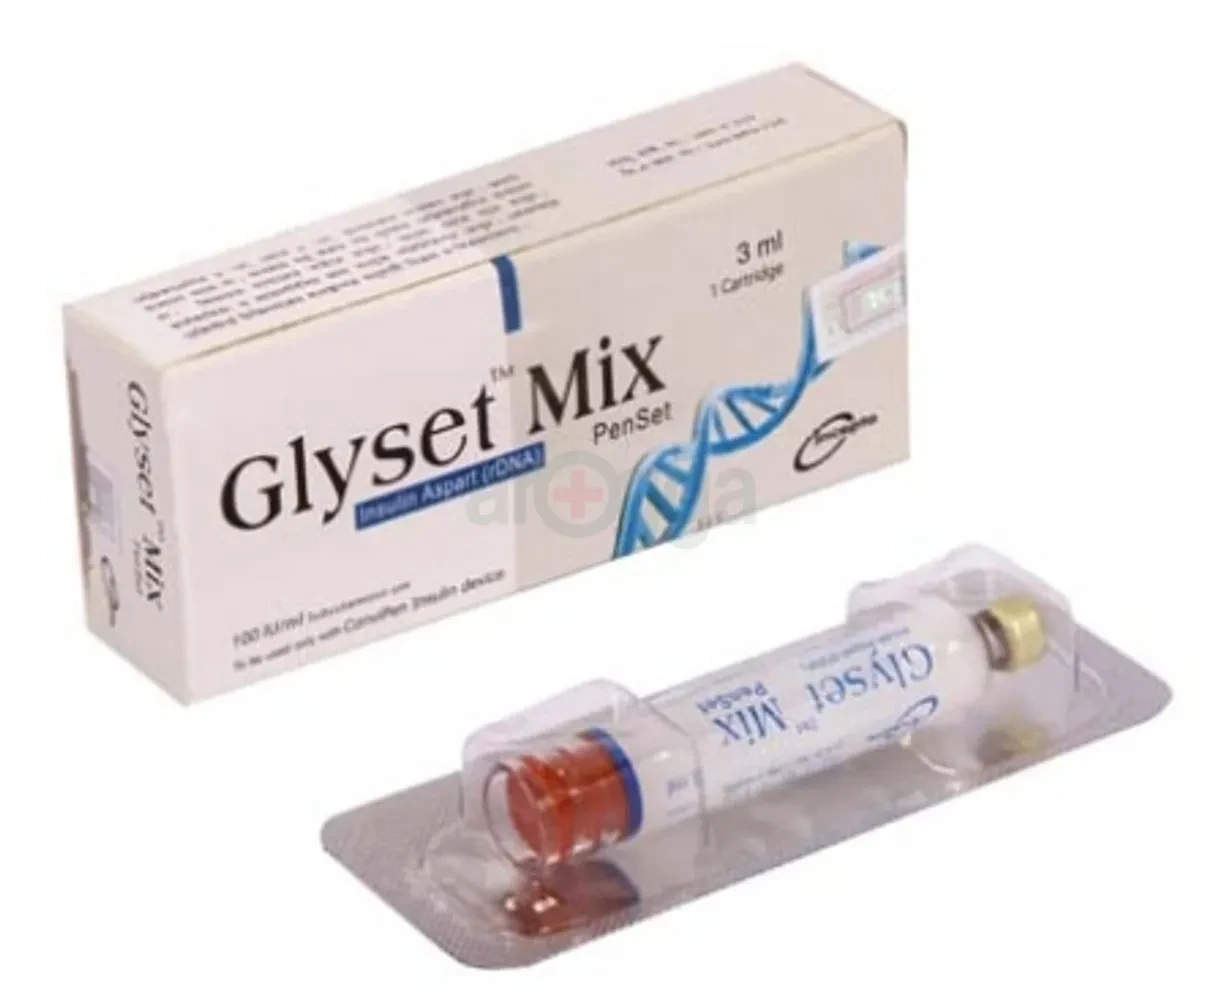 Glyset Mix Penset 100IU/ml